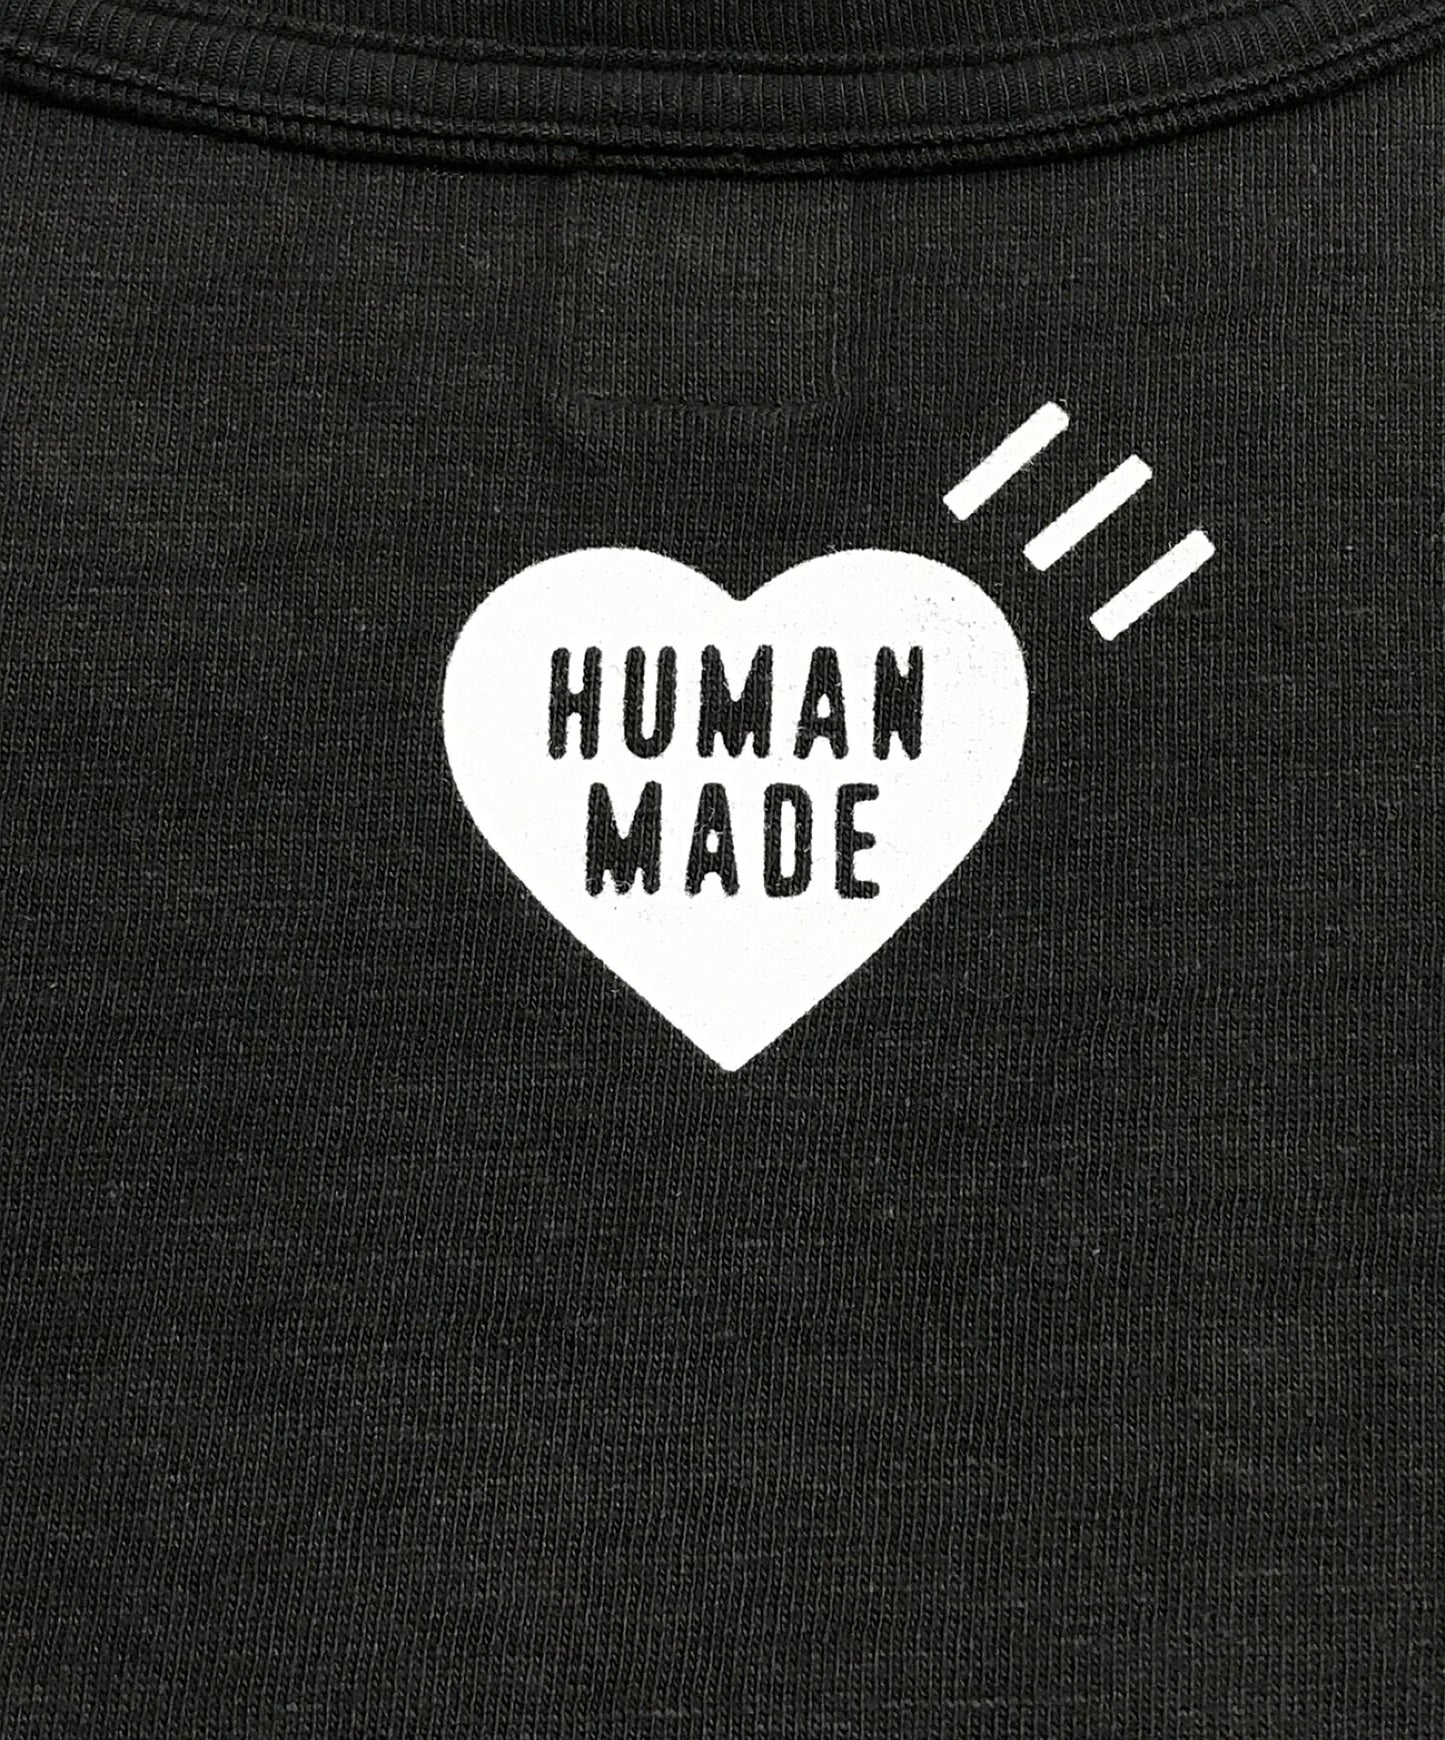 เสื้อยืดโลโก้ของมนุษย์ Made Made